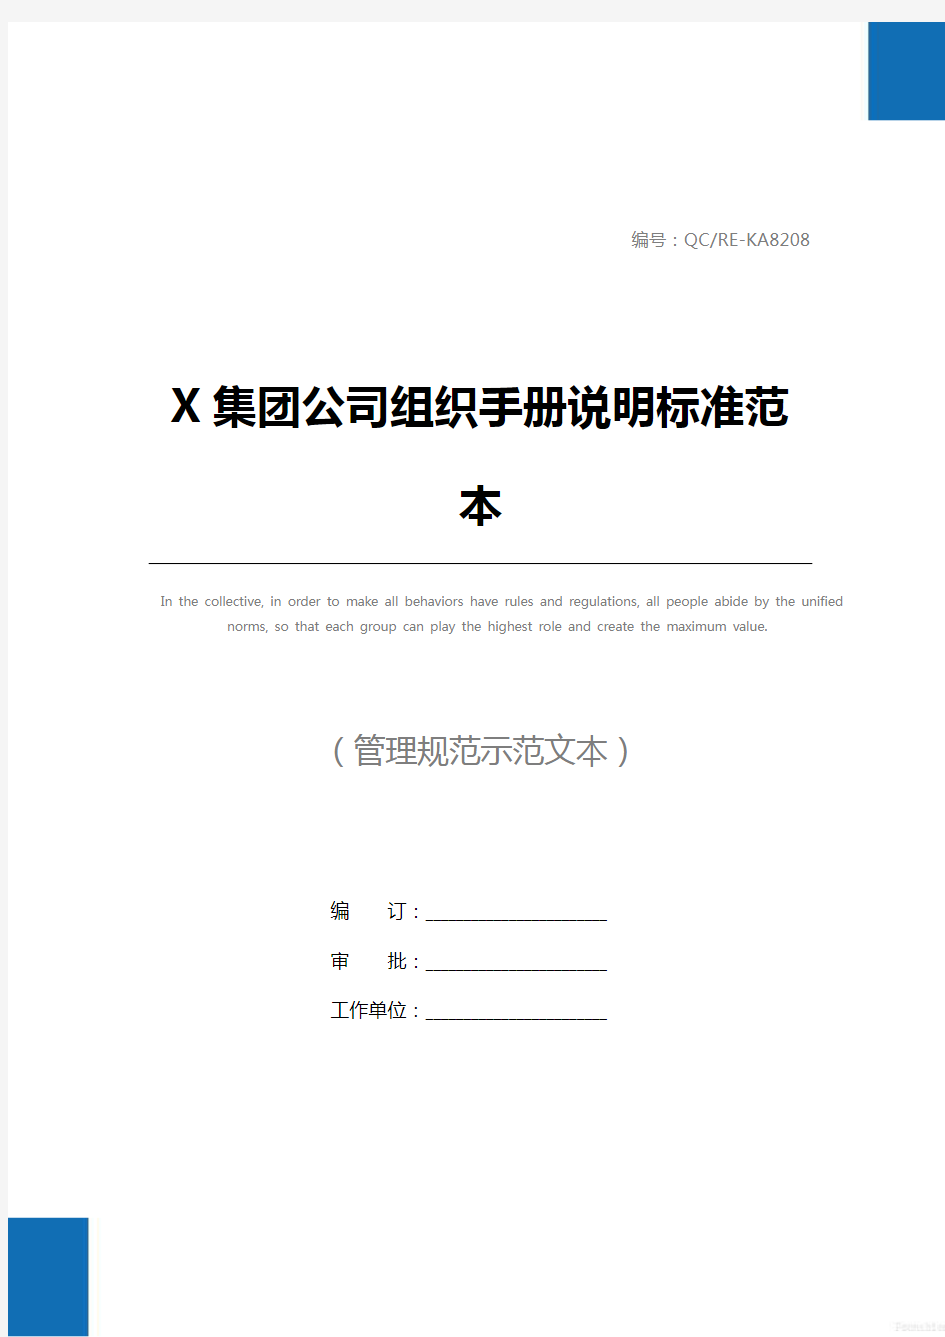 X集团公司组织手册说明标准范本